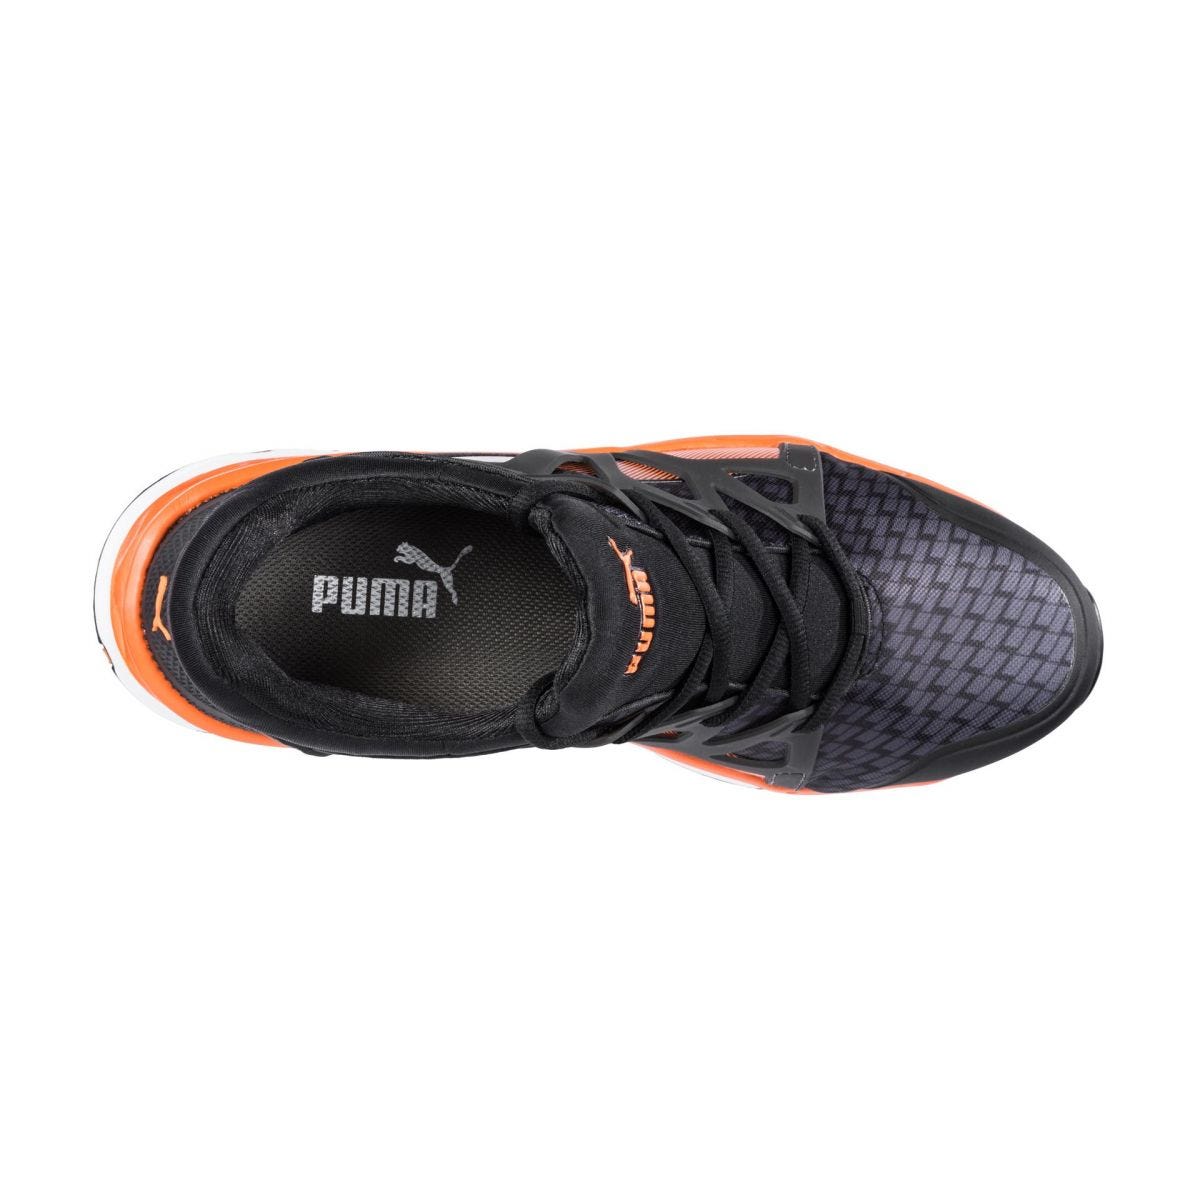 Chaussures de sécurité Rush 2.0 mid S1P ESD HRO SRC - Puma - Taille 41 3